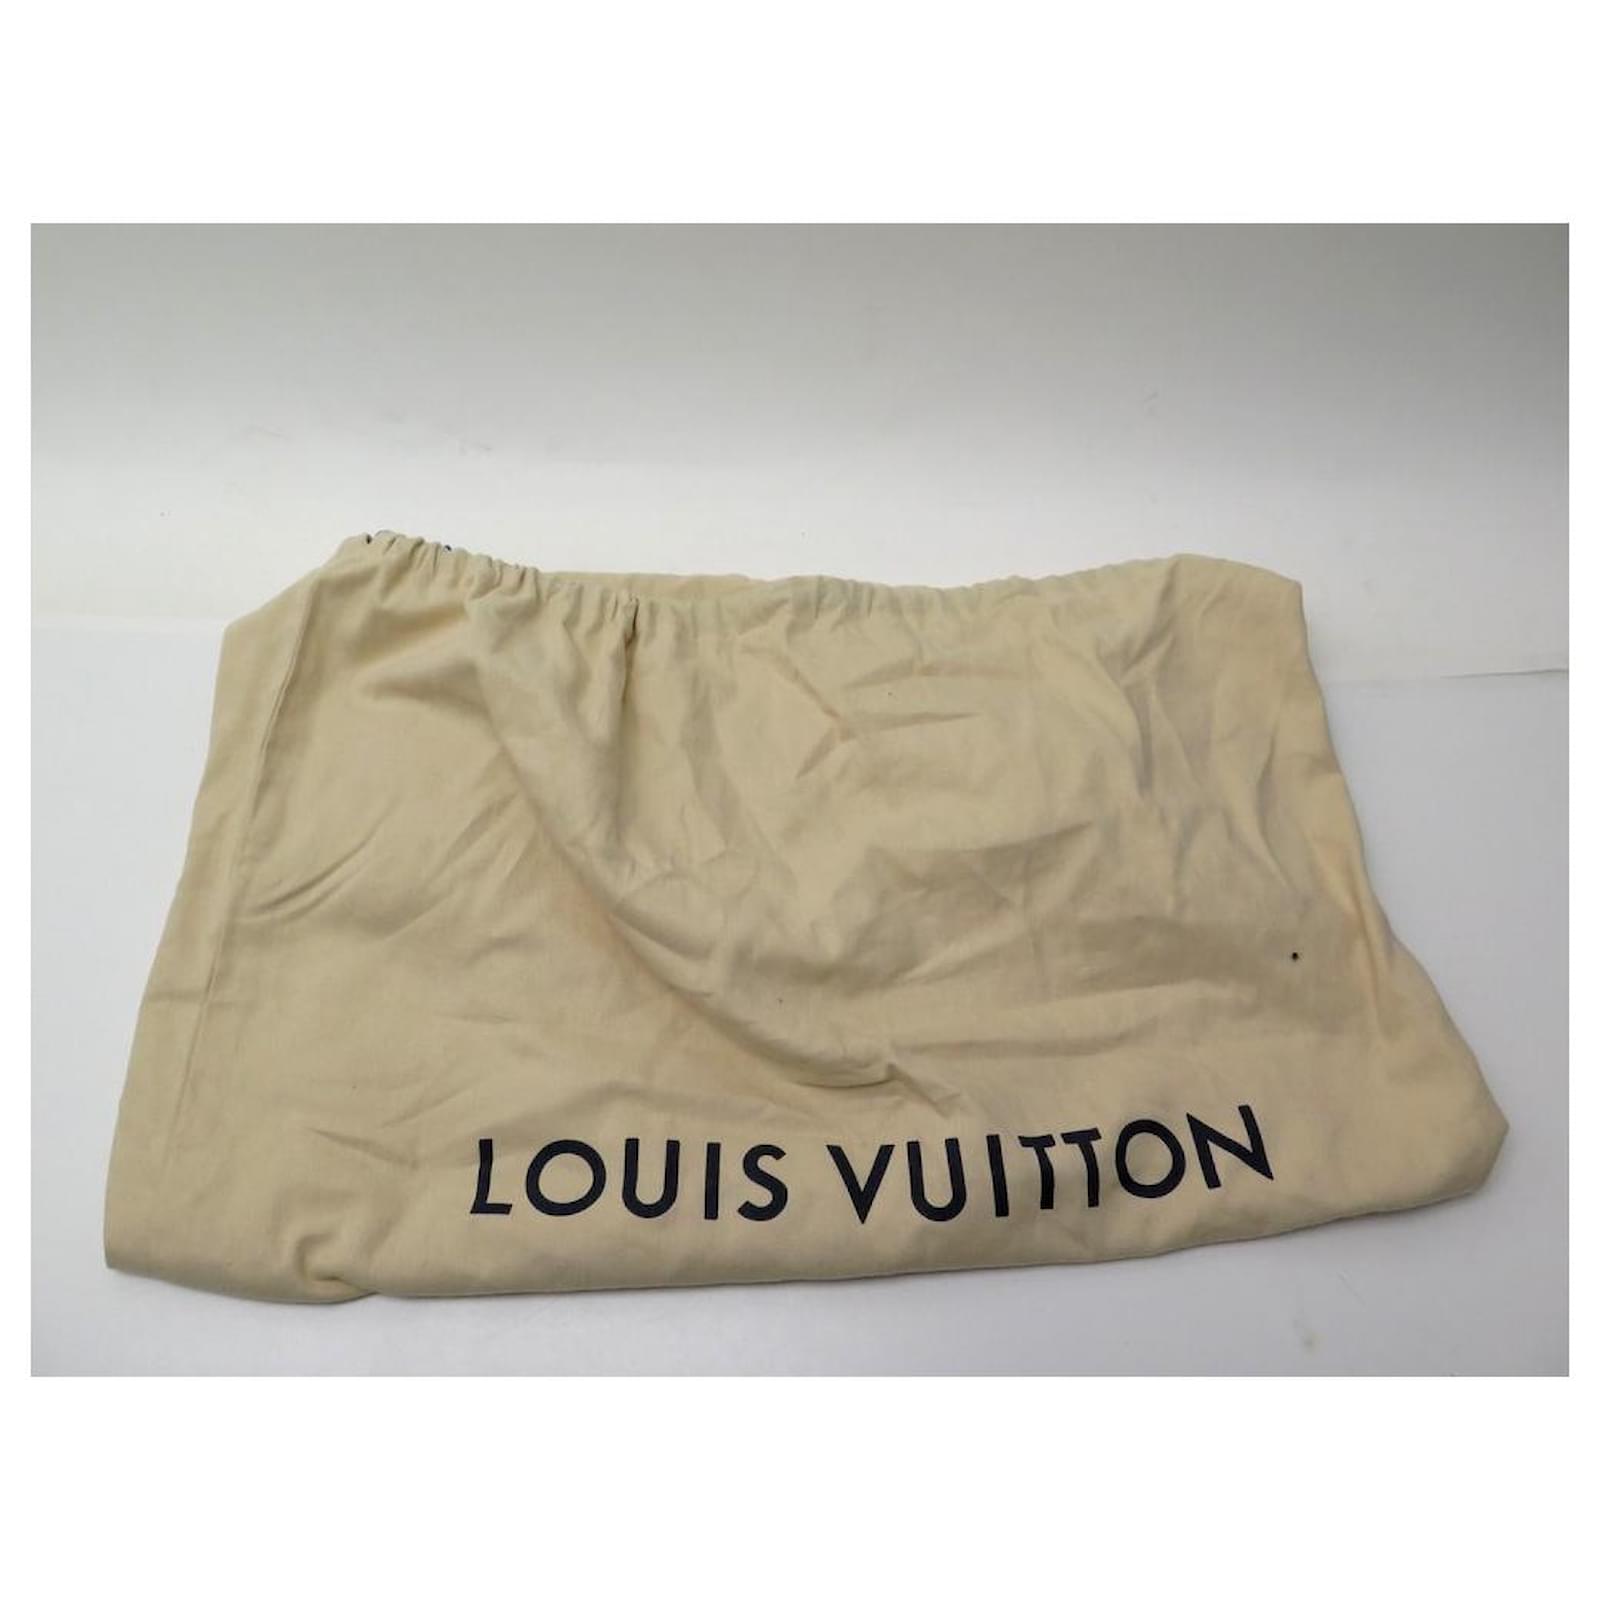 Auth Louis Vuitton Damier Graphite Overnight N41004 Men's Briefcase